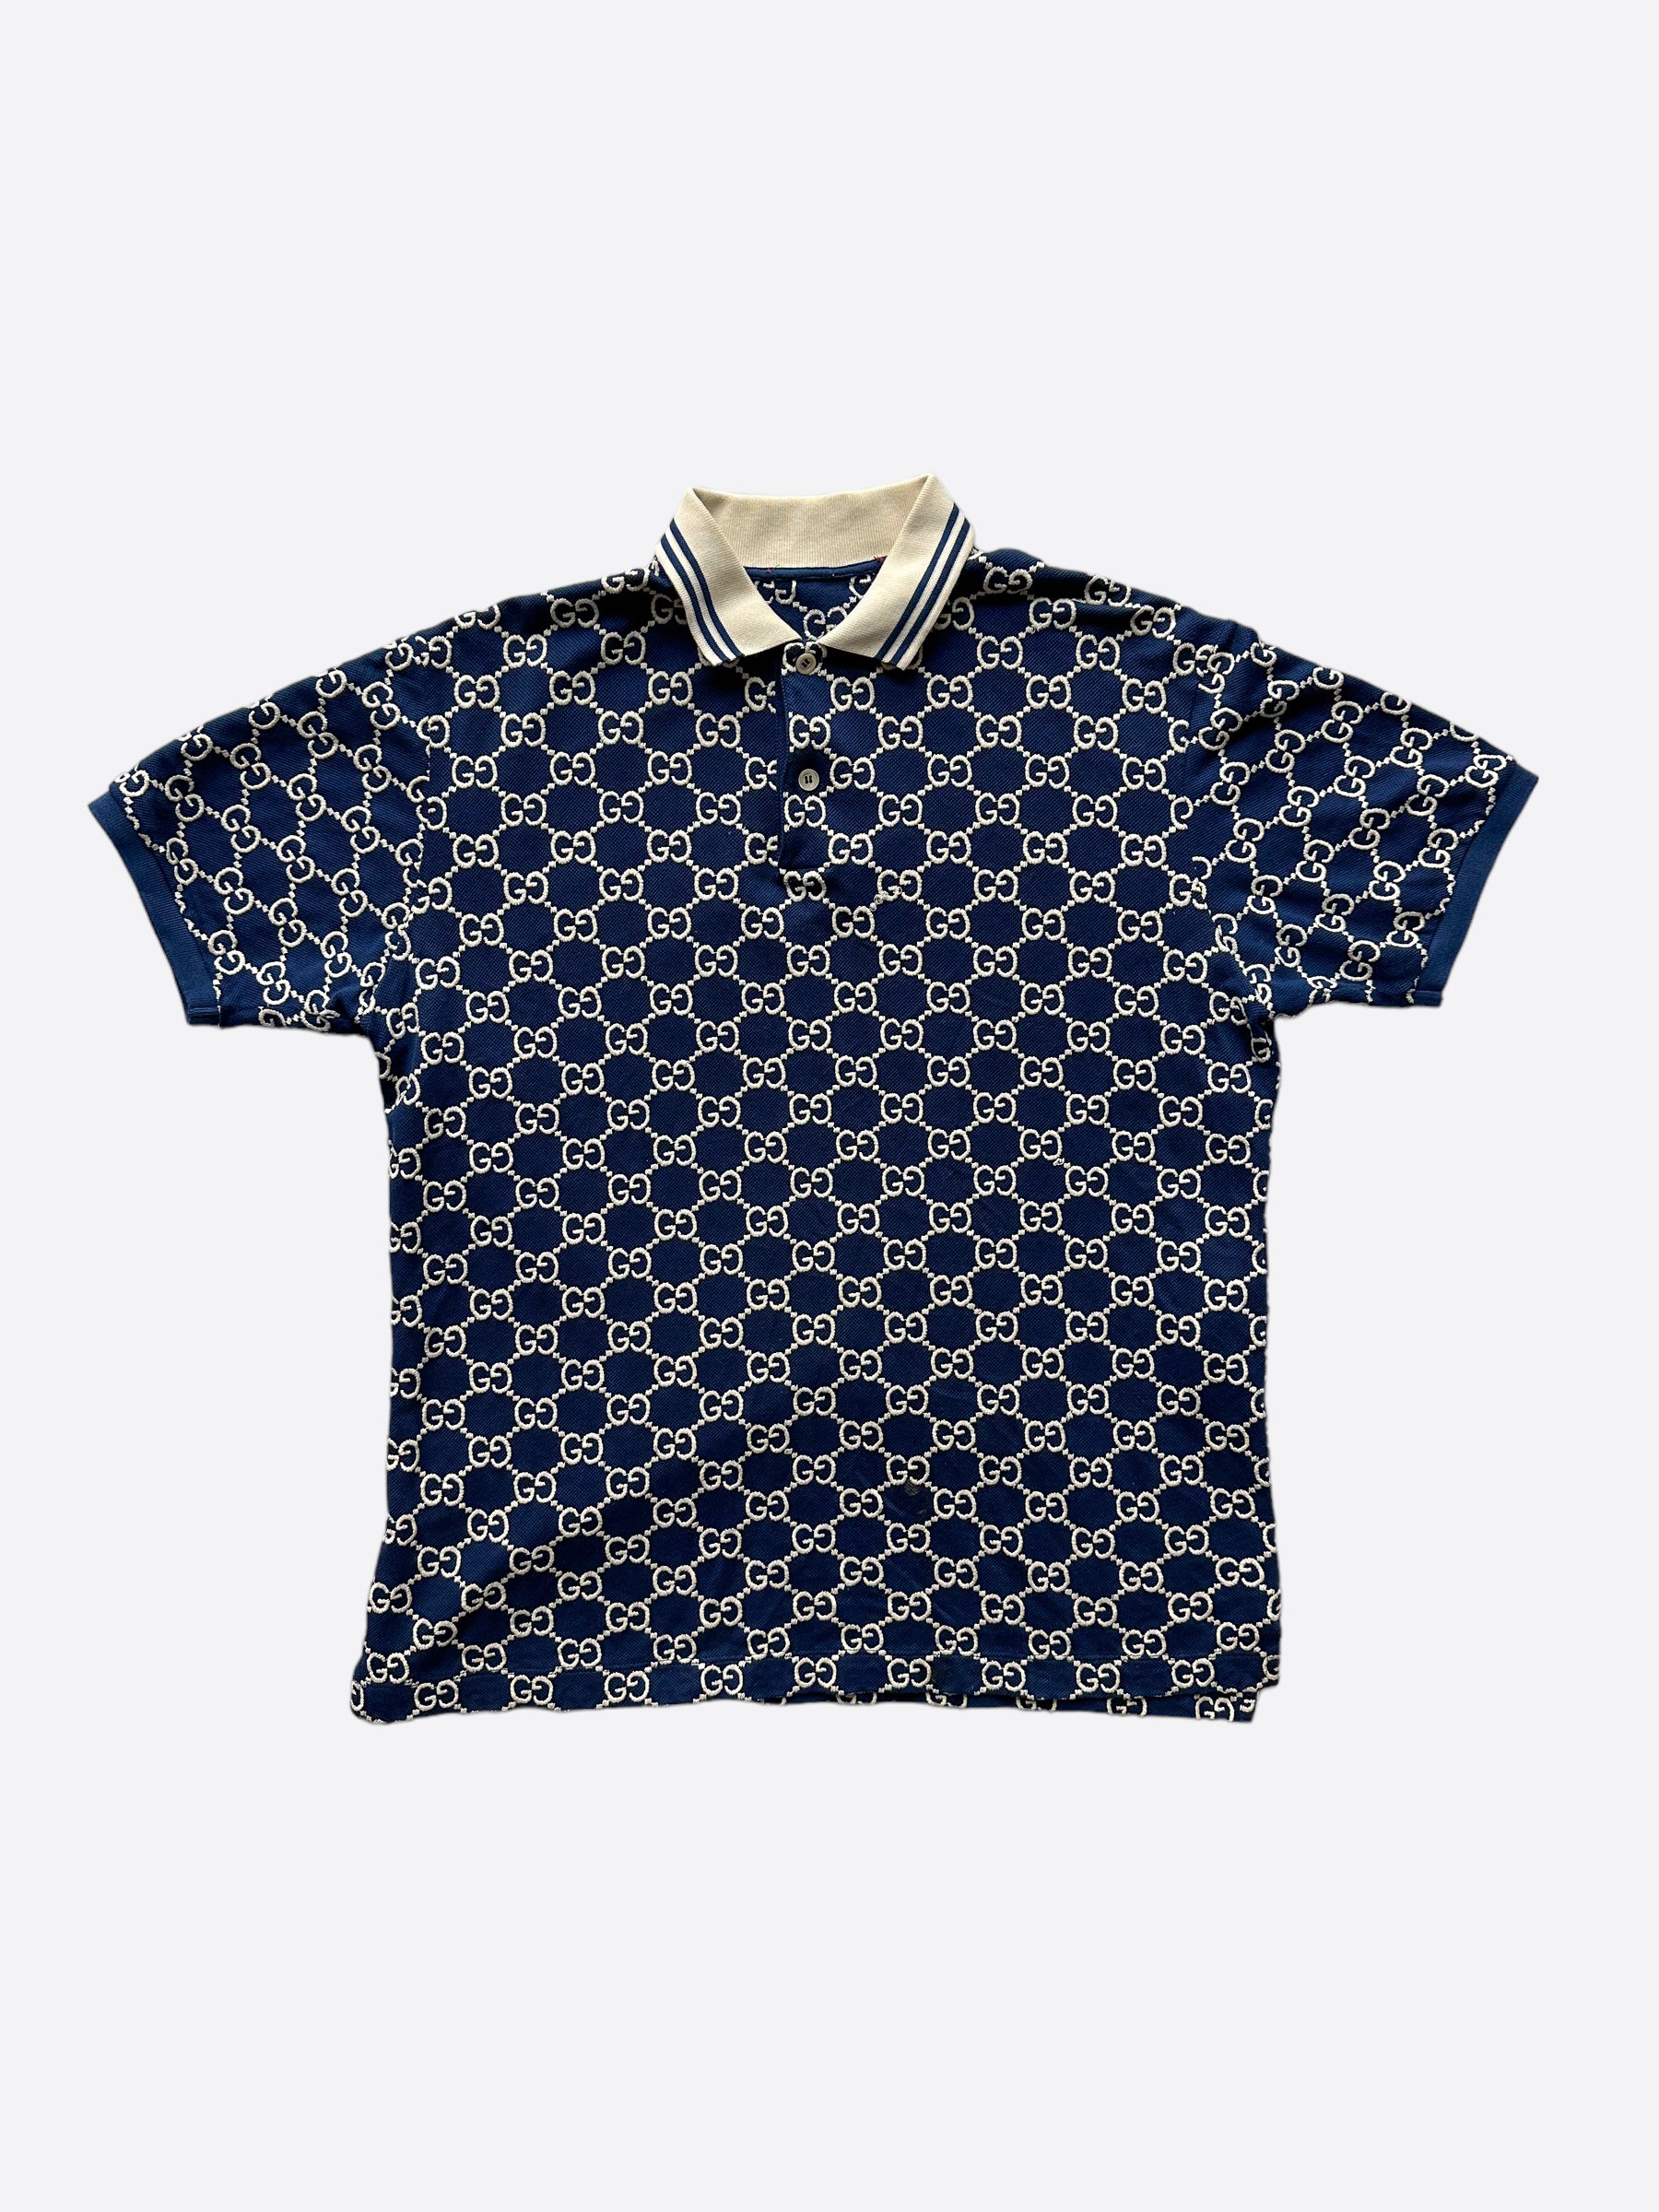 L - Gucci Vintage Authentic Monogram Blue Polo Shirt